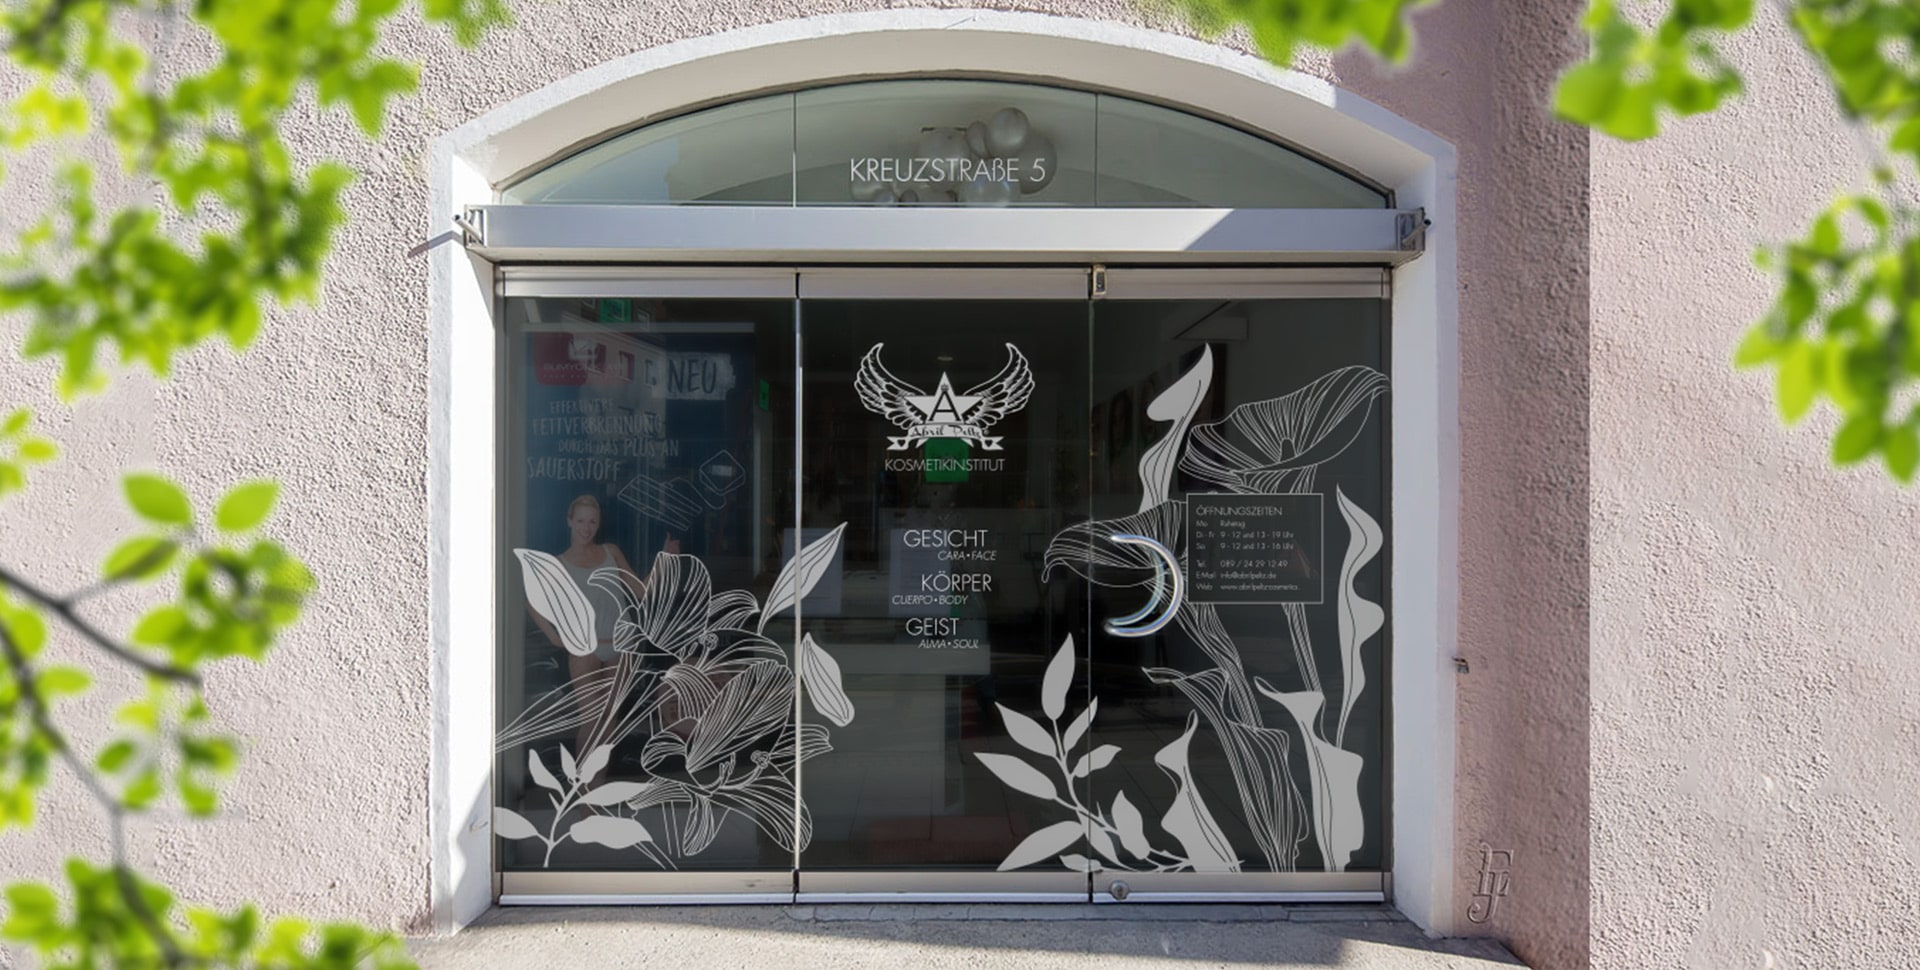 Das frisch bedruckte Ladenfenster von Abril Peltz Cosmetics im passenden Look